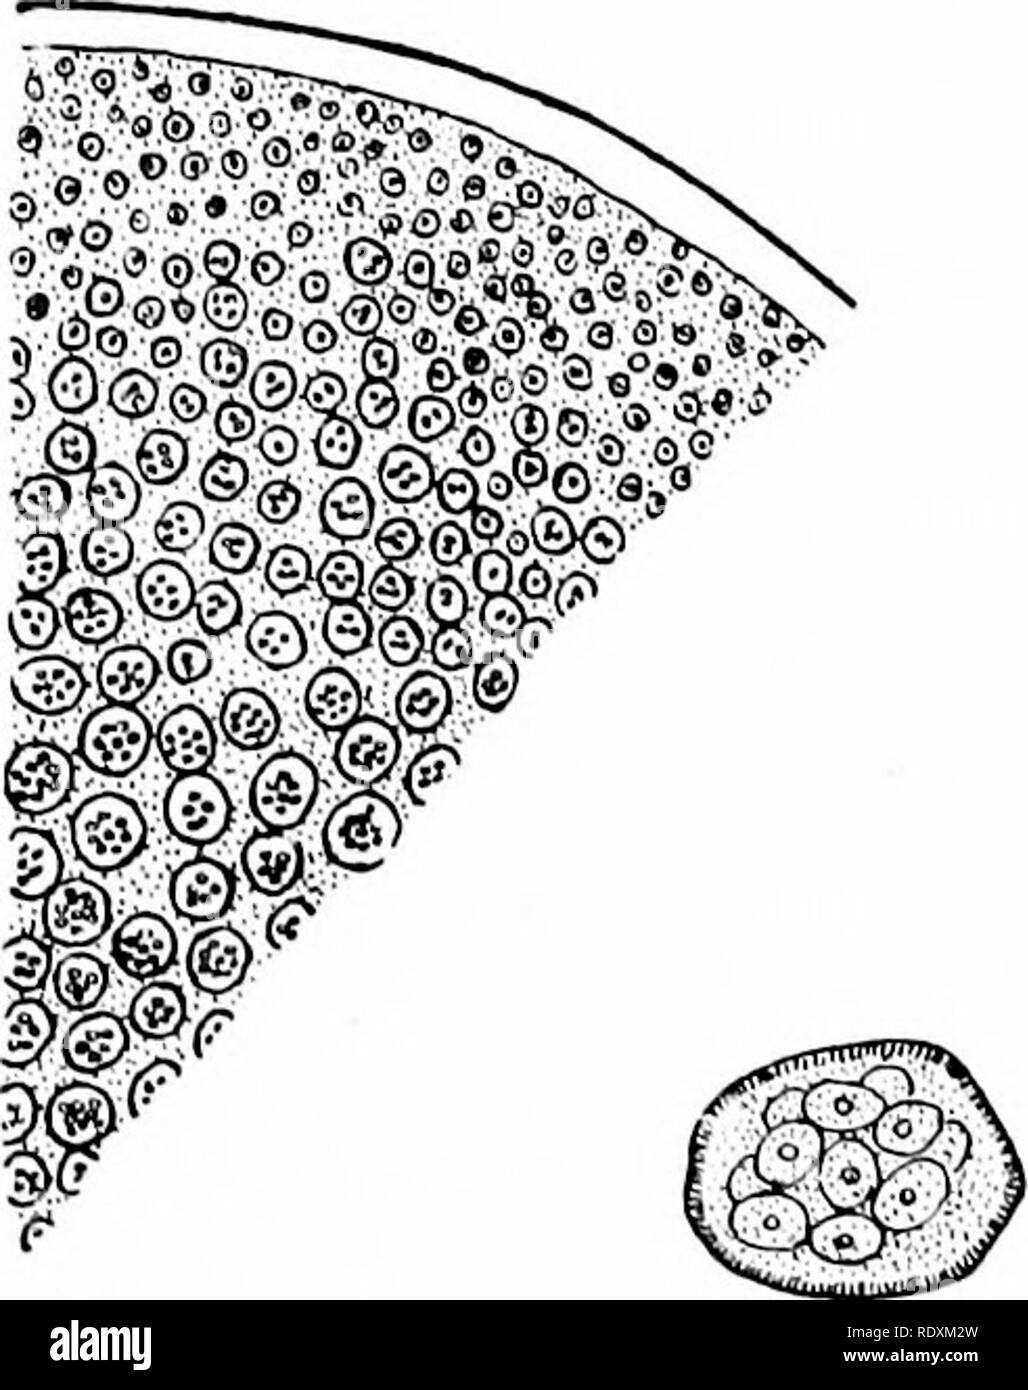 . Protozoo?. Protozoen; Protozoen, Pathogenen. Reproduktion AXD DIE LIFE CYCLE 185 mit dem mycetozoa, und diese eine phylogenetische Beziehung zwischen dem neosporidia und der rhizopoda througli. Dies ist im Fall von Schcwiakovclla schmcili particnlarly gut illustriert, ein parasit von copepotls, wo es nicht nur eine multinucleate trophozoite Hirsch'e, aber der Parasit unterscheidet sich von allen anderen sporozoa in havino - eine deutliche rhizopod Merkmal in seiner kontraktilen Vakuole, während es mit aorees mycetozoa in diesem Jungen-Formen kommen togetlier und Sicherung Plas - modia zu bilden. Eine weitere Besonderheit o Stockfoto